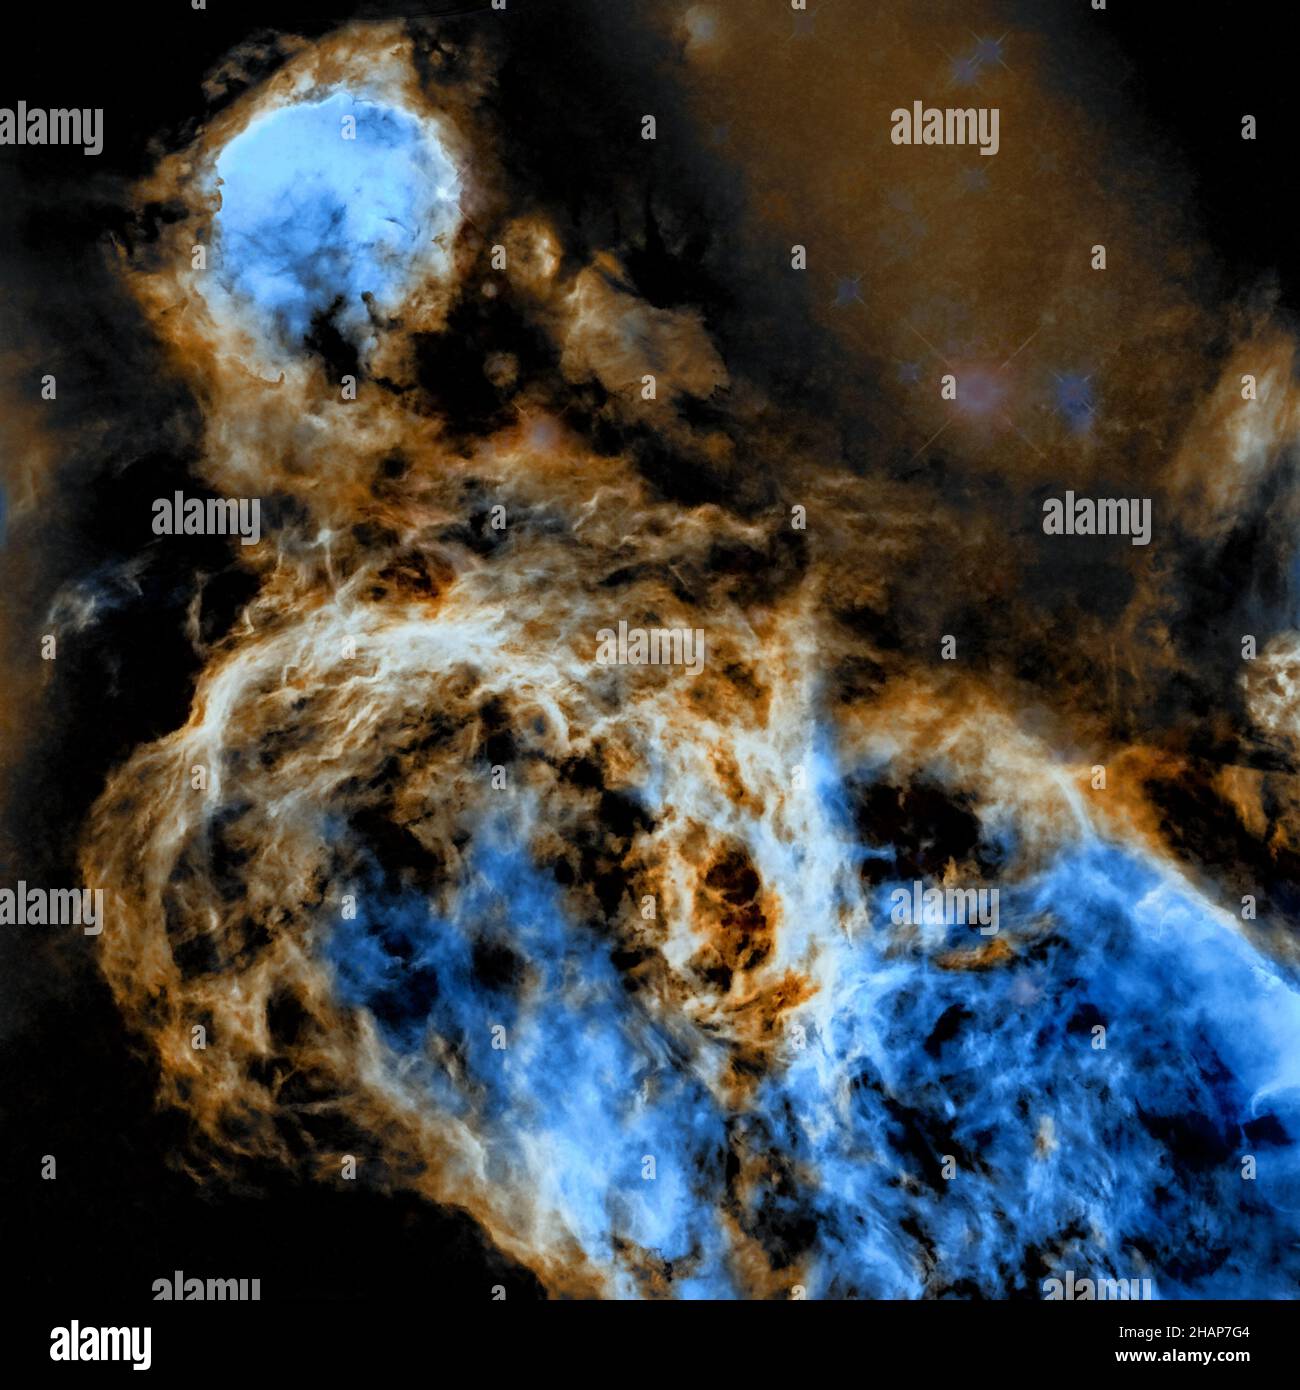 Astrofotografia NGC 3324 è un cluster aperto nella costellazione meridionale della Carina, situata a nord-ovest della Carina Nebula (NGC 3372) Foto Stock